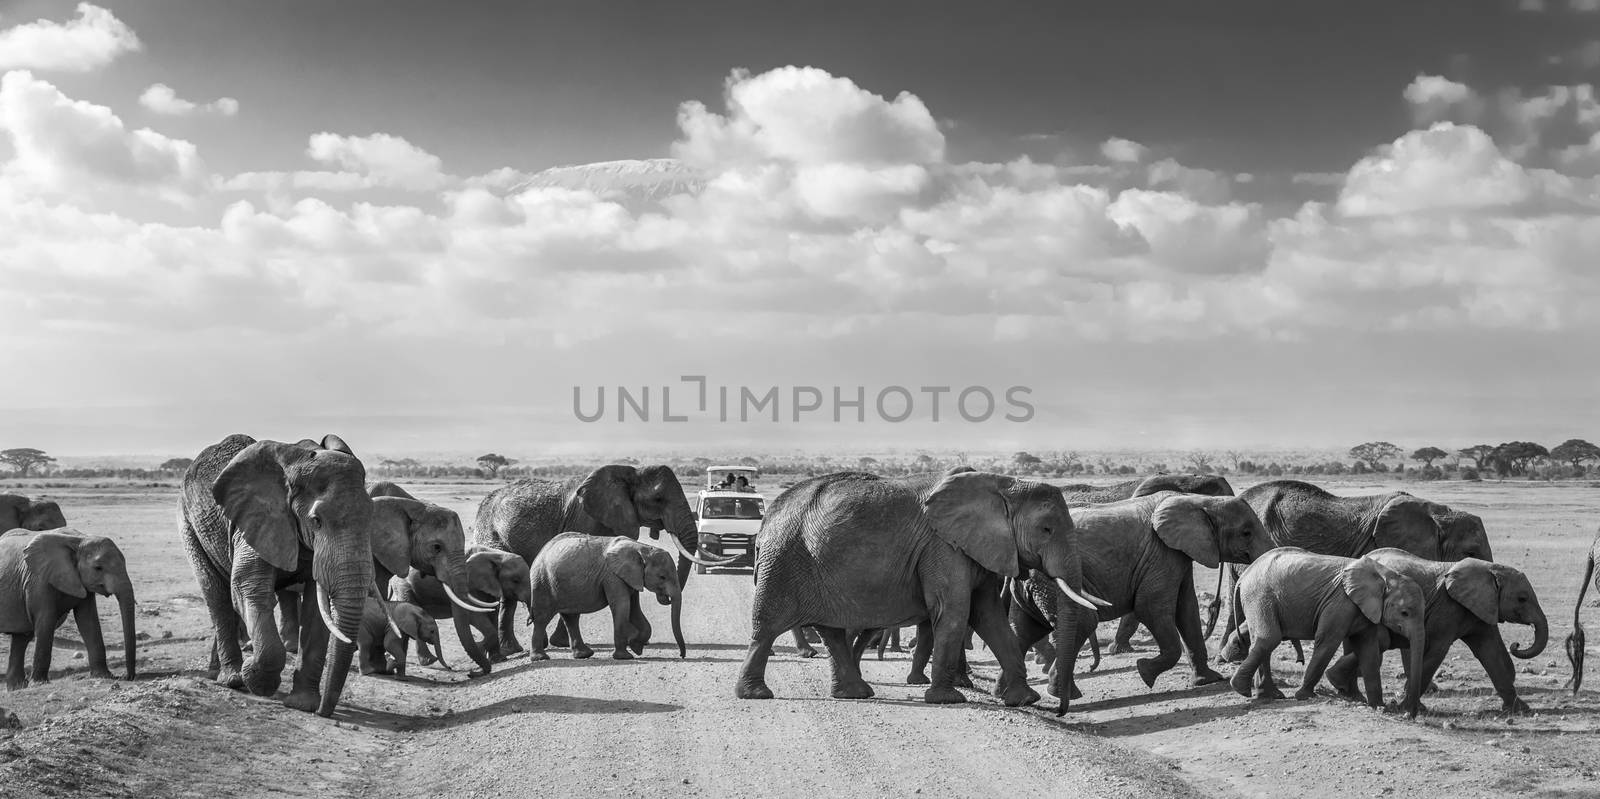 Herd of big wild elephants crossing dirt roadi in Amboseli national park, Kenya. by kasto